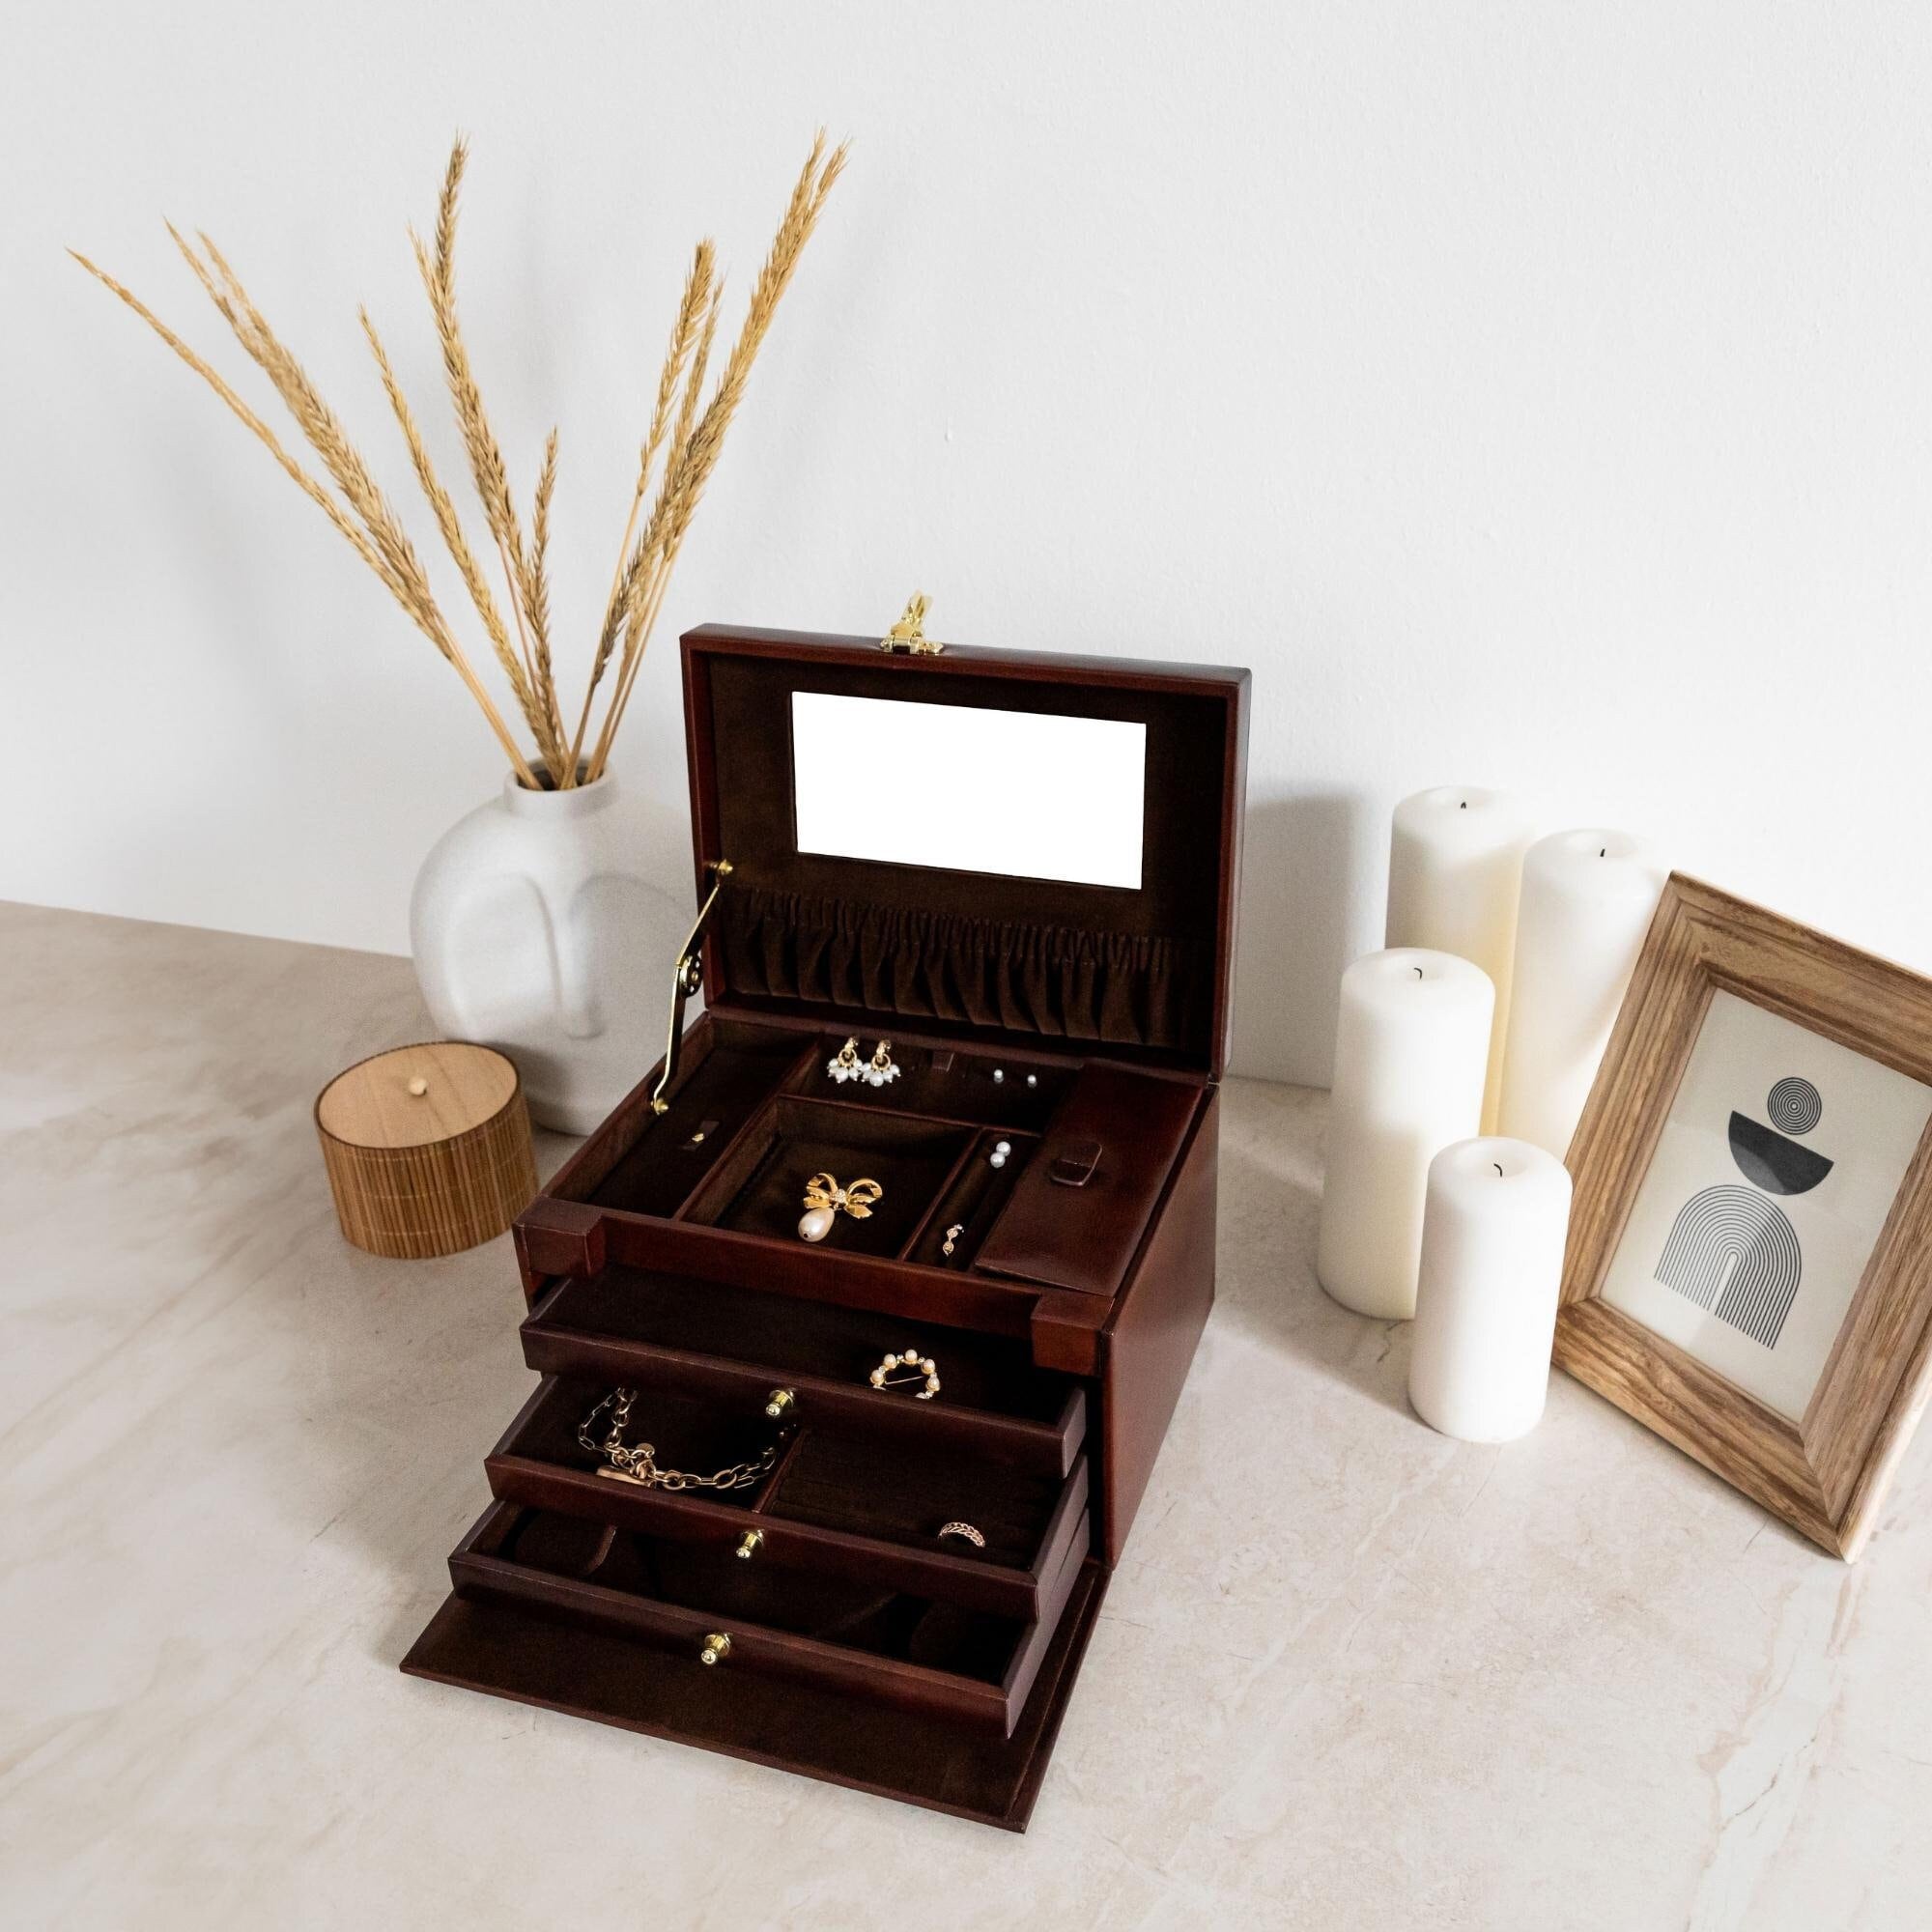 joyeros grandes originales - Buscar con Google  Mirror jewellery cabinet,  Home organization, Mirror jewelry storage